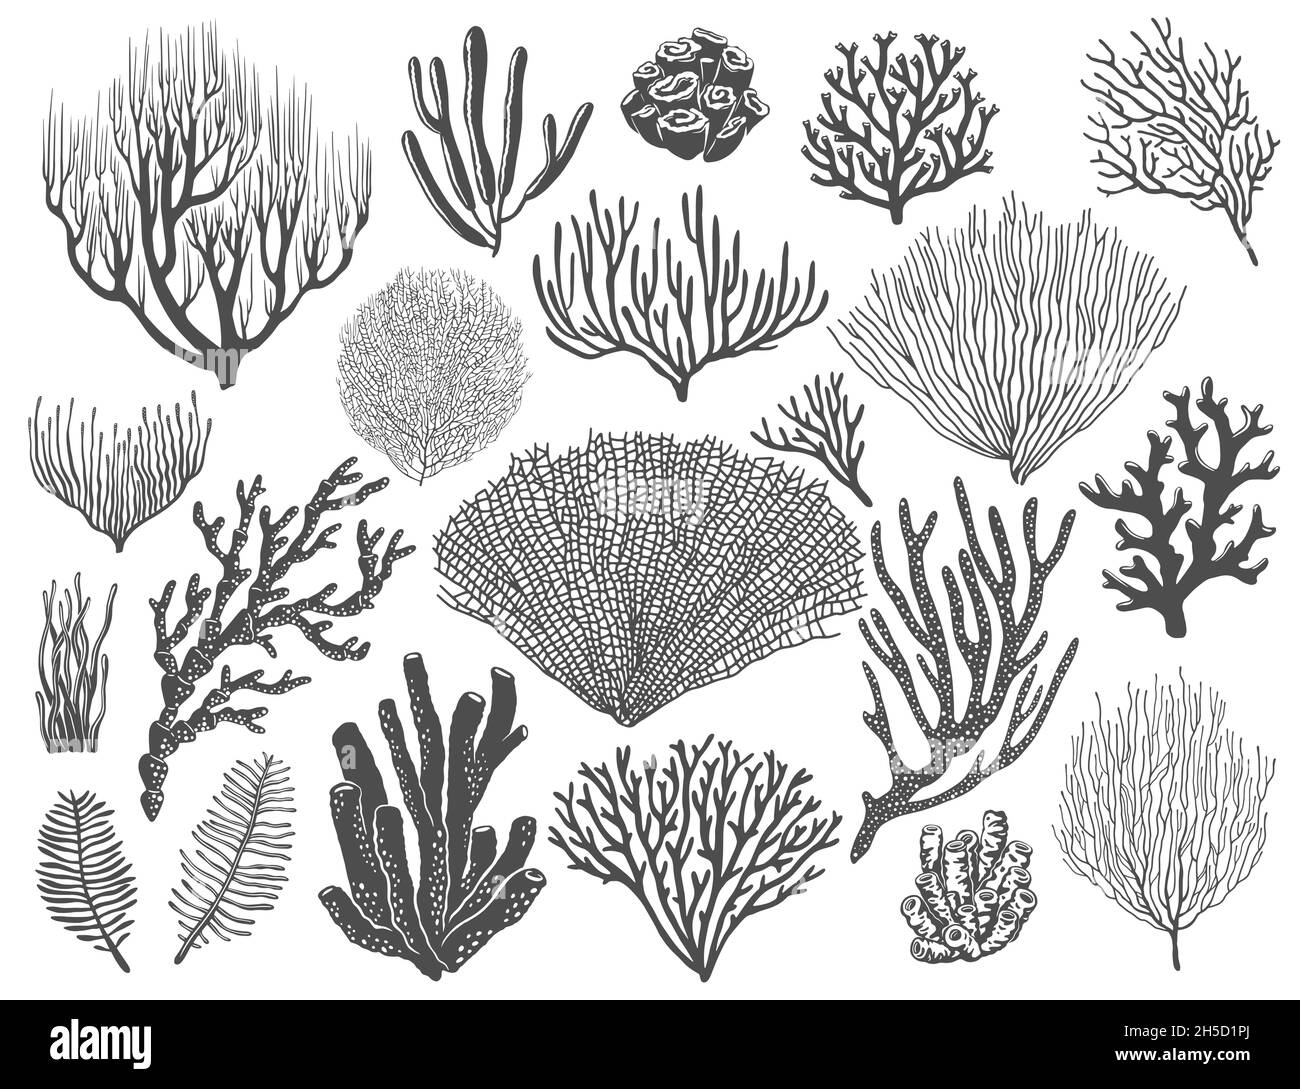 Coralli marini, spugne di barriera corallina e alghe marine. Ocean Bottom LIFE, animali e piante marine, specie topiche di flora sottomarina. Nero vettoriale monocromatico, stellare Illustrazione Vettoriale